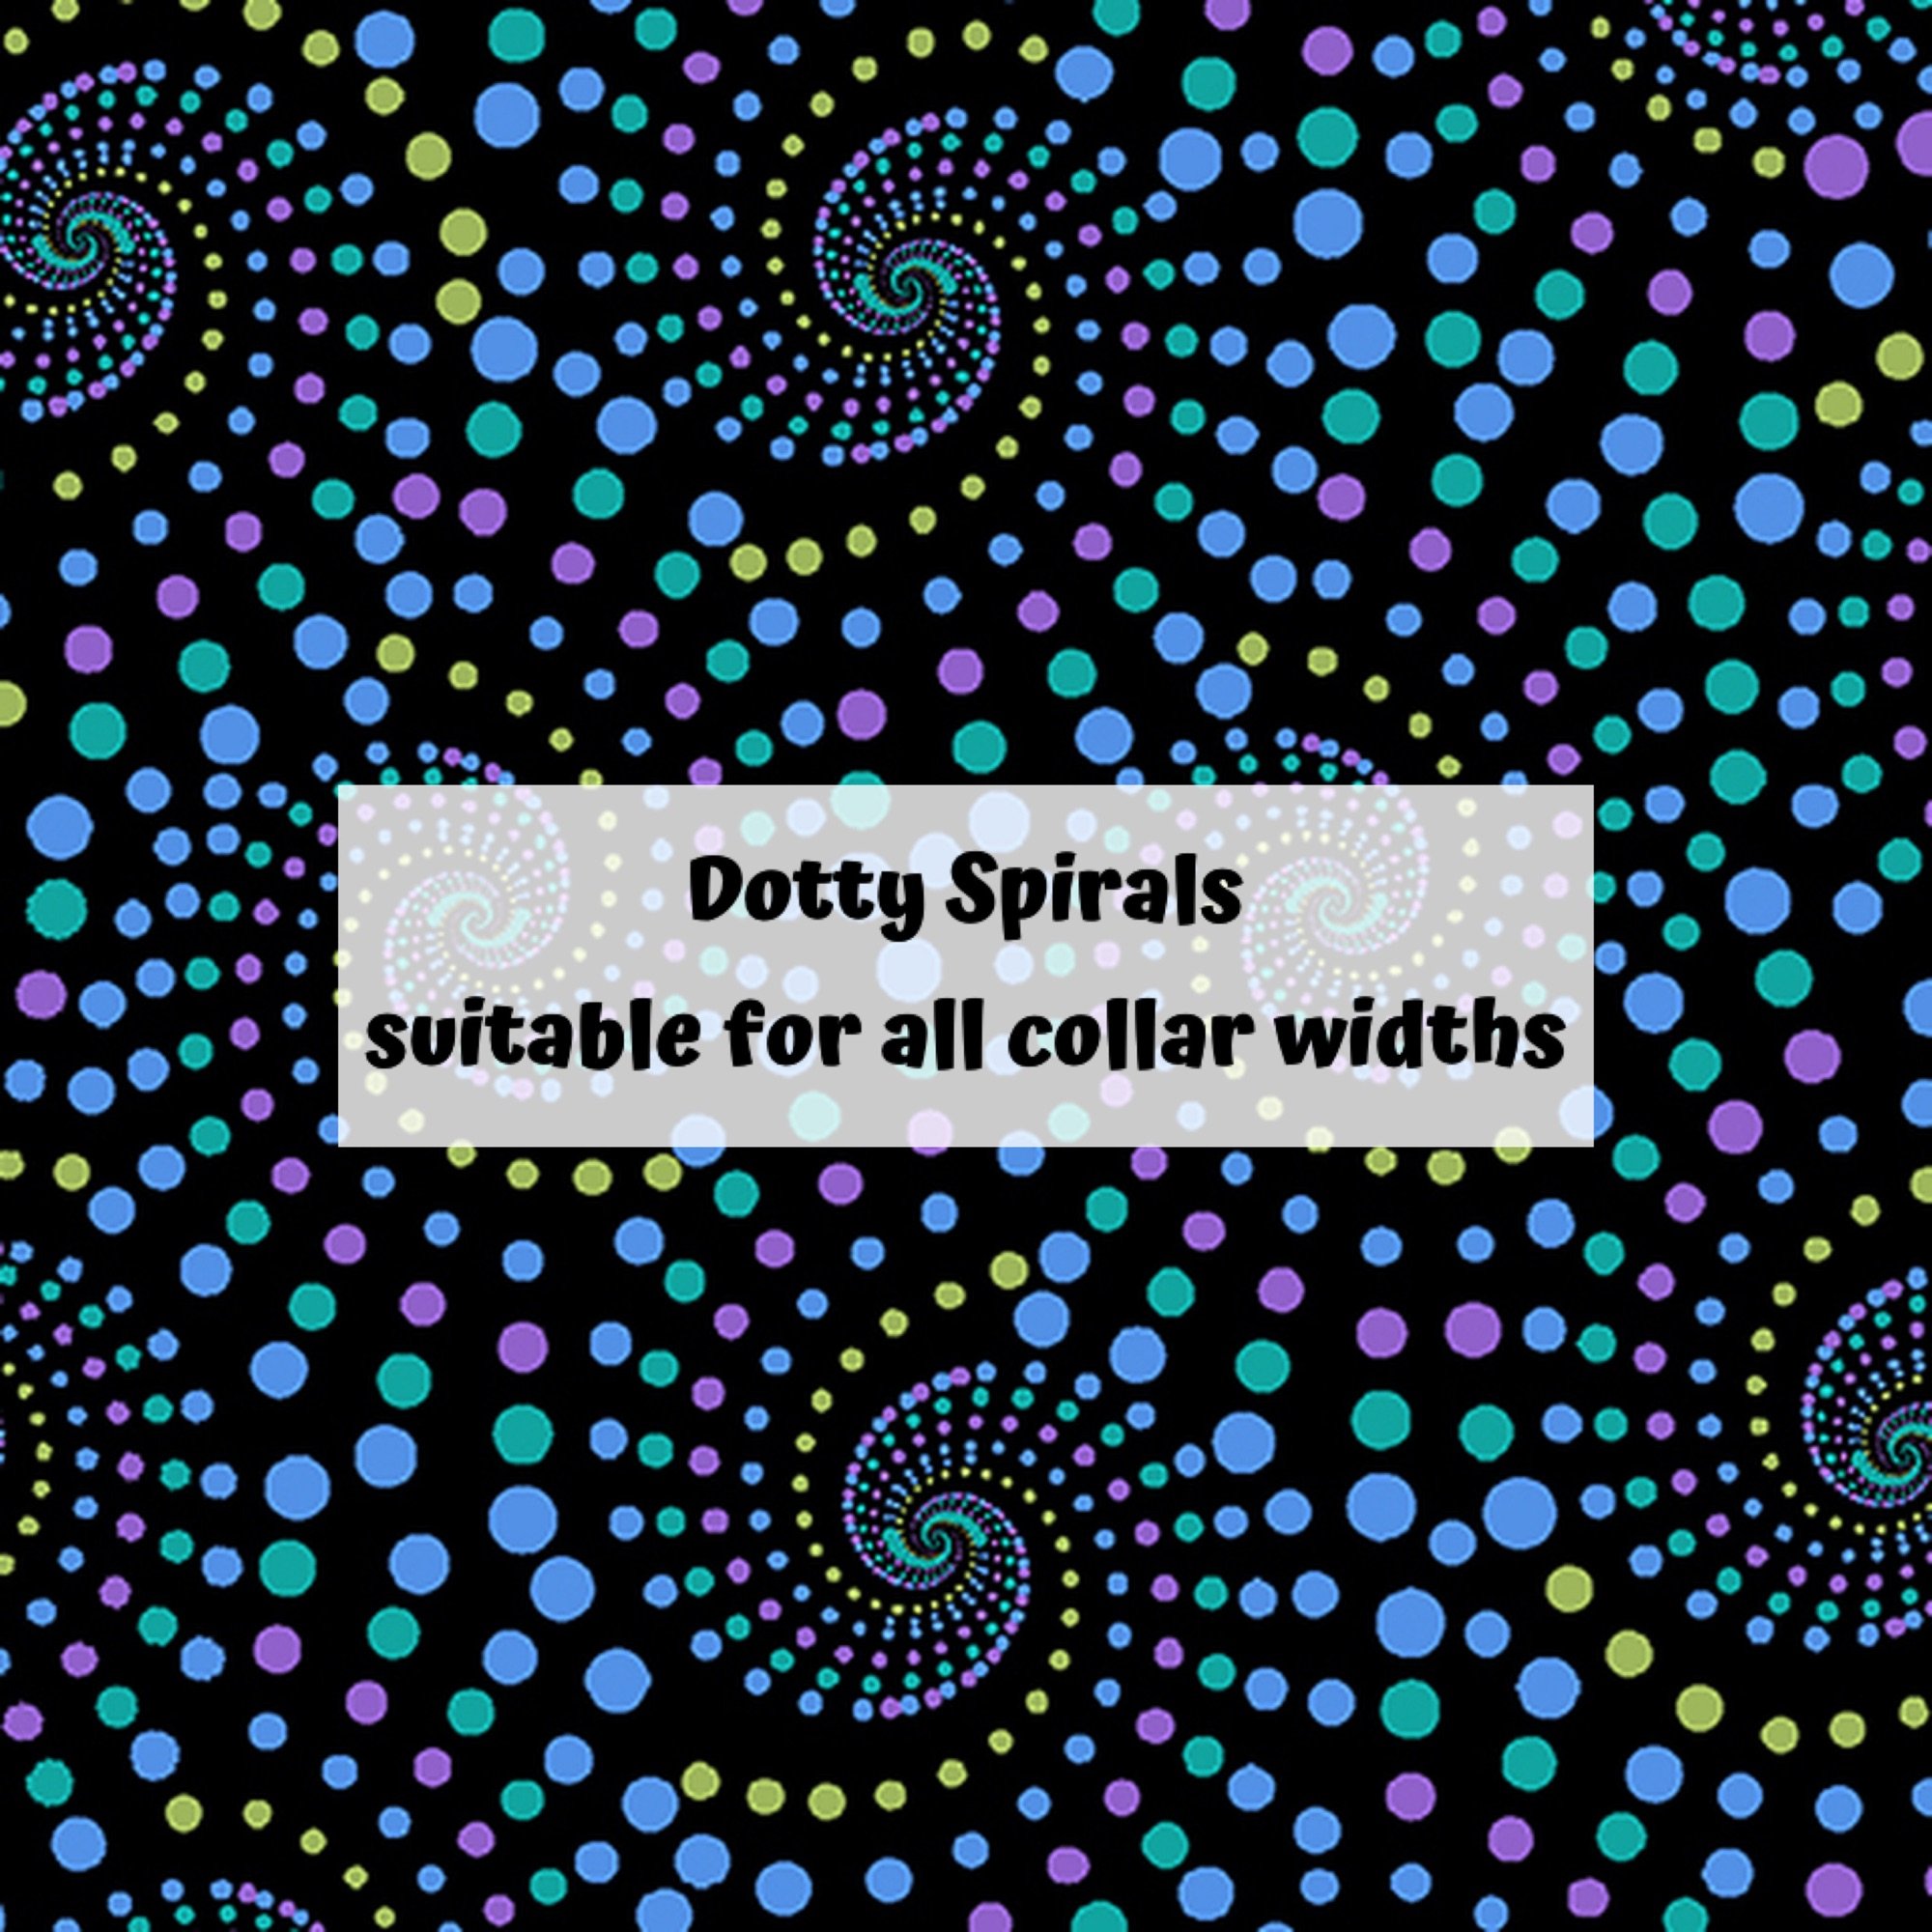 Dotty Spirals